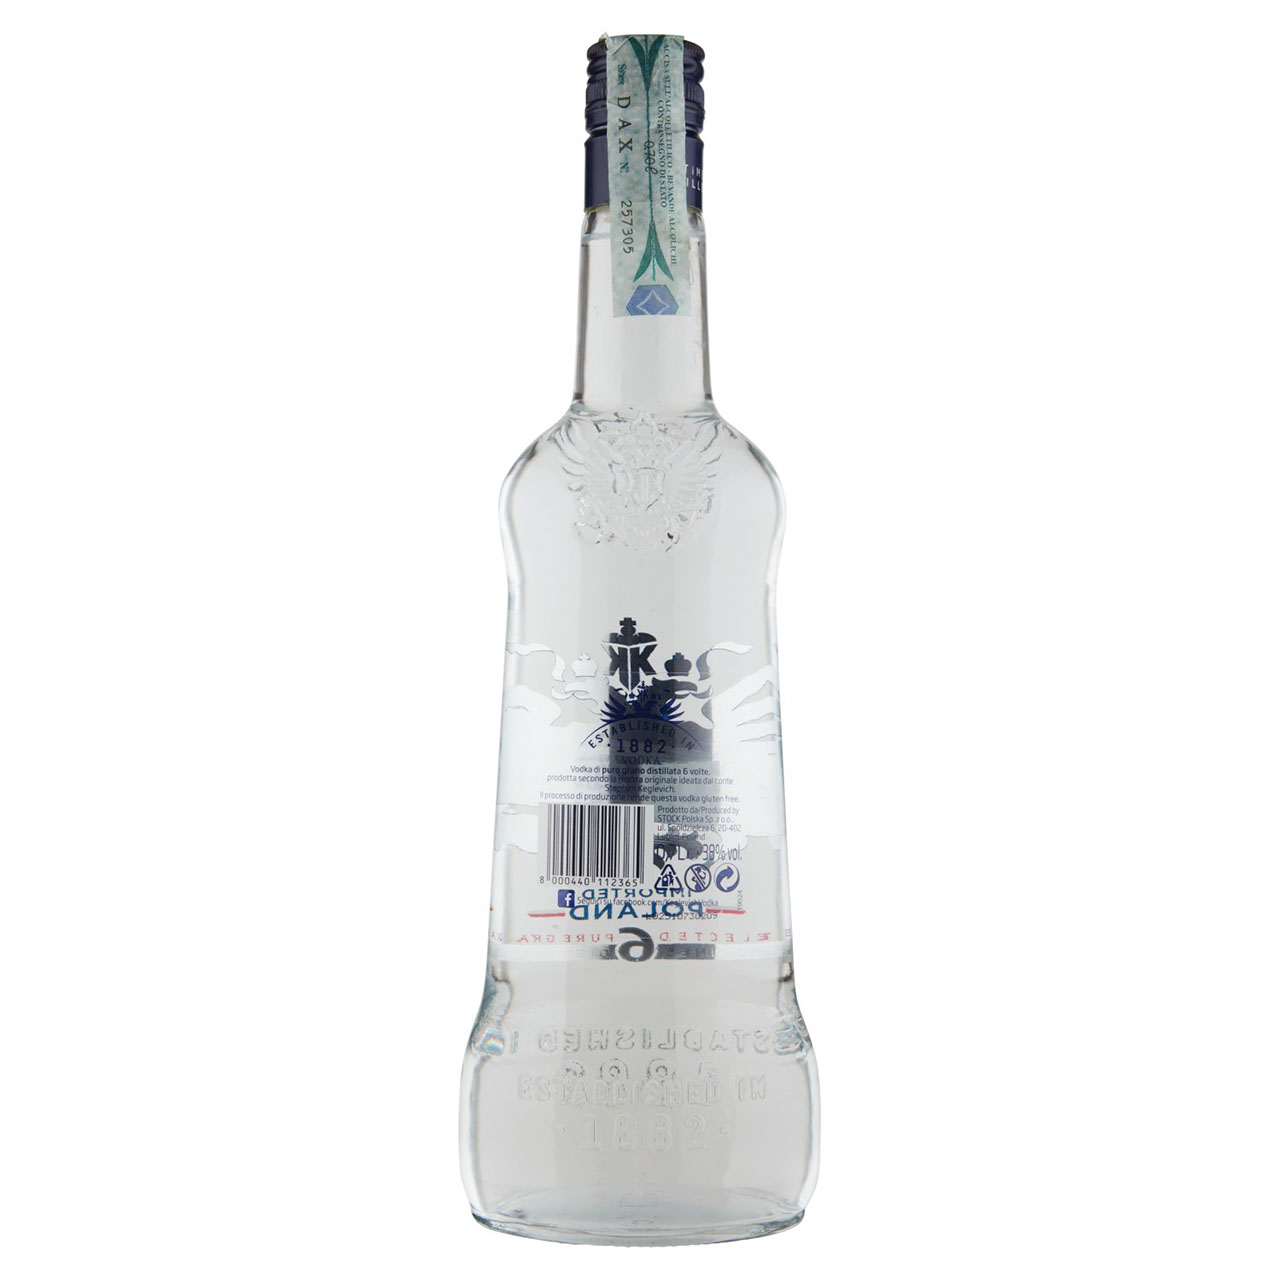 Vodka Keglevich 0,7 L in vendita online